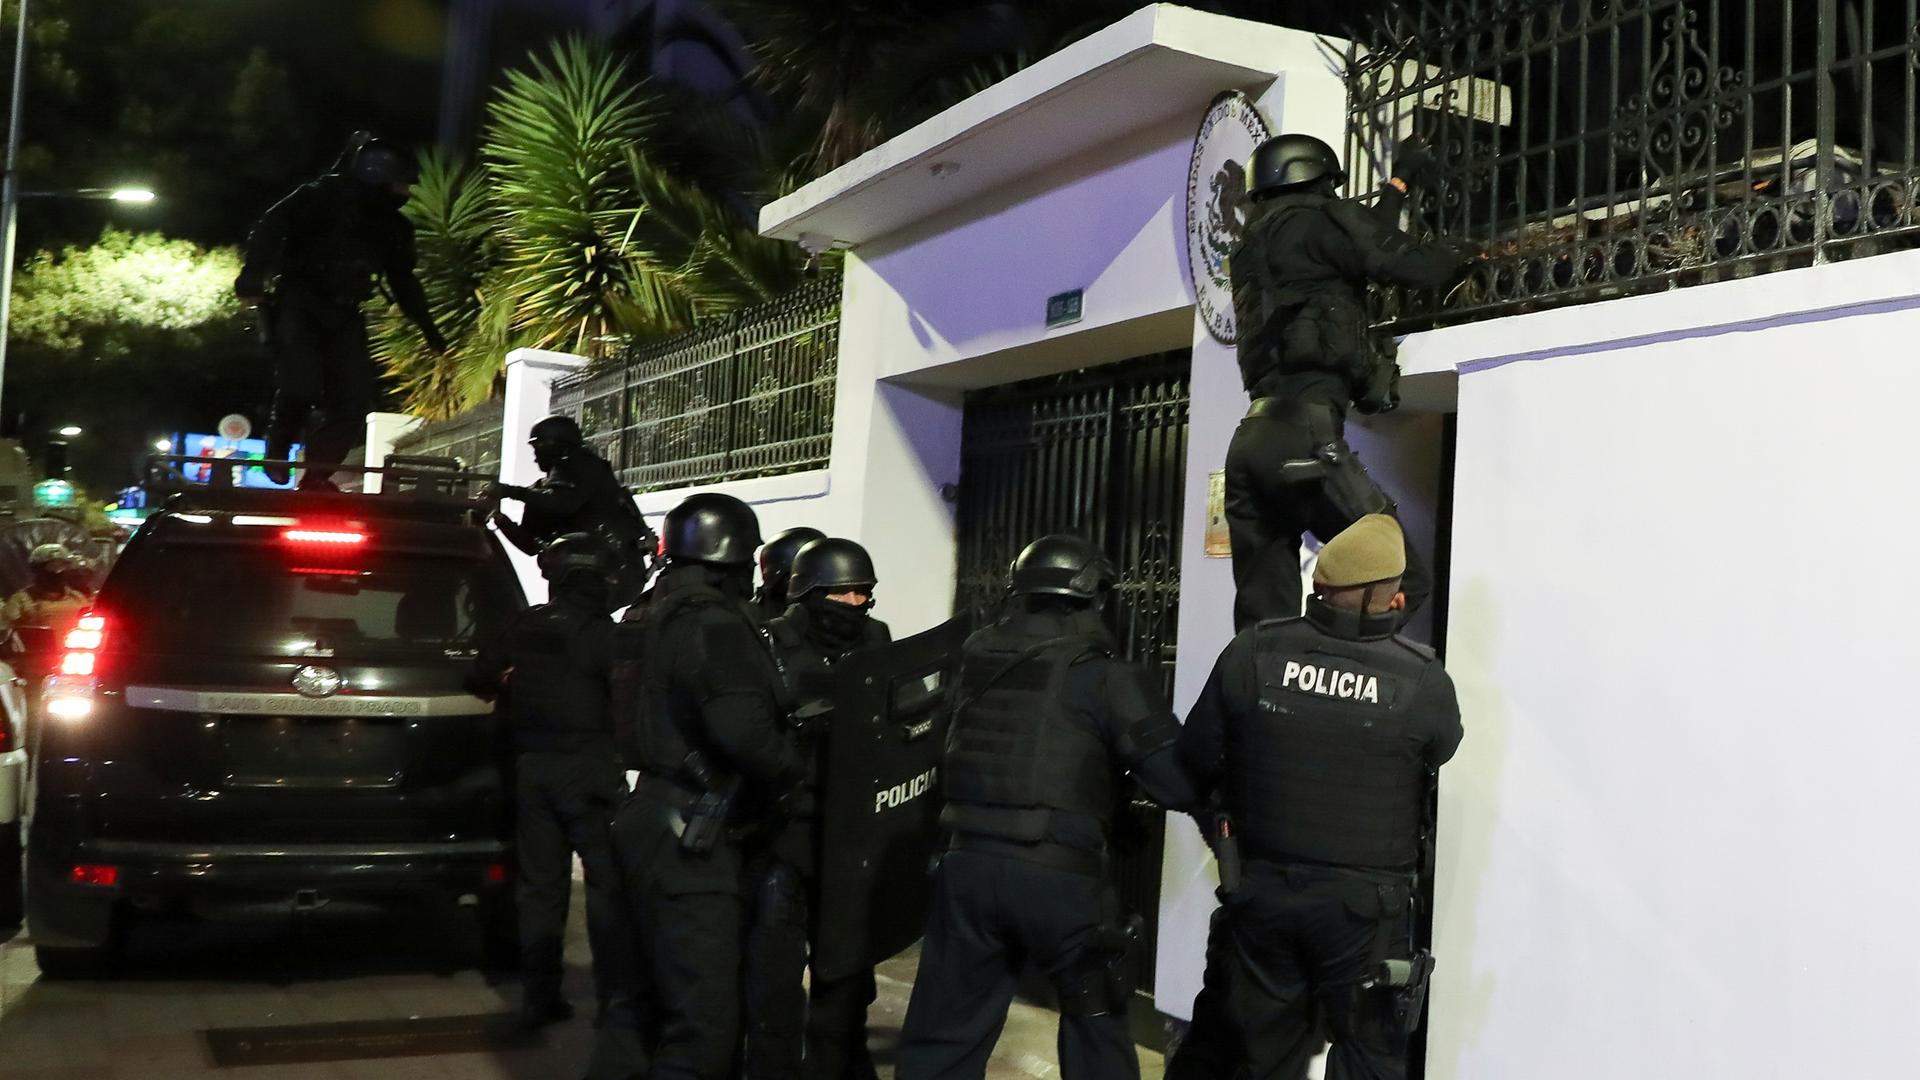 Polizisten in schusssicheren Westen und mit Helmen stehen vor der mexikanischen Botschaft in Quito. Ein Polizist klettert die Mauer hoch.